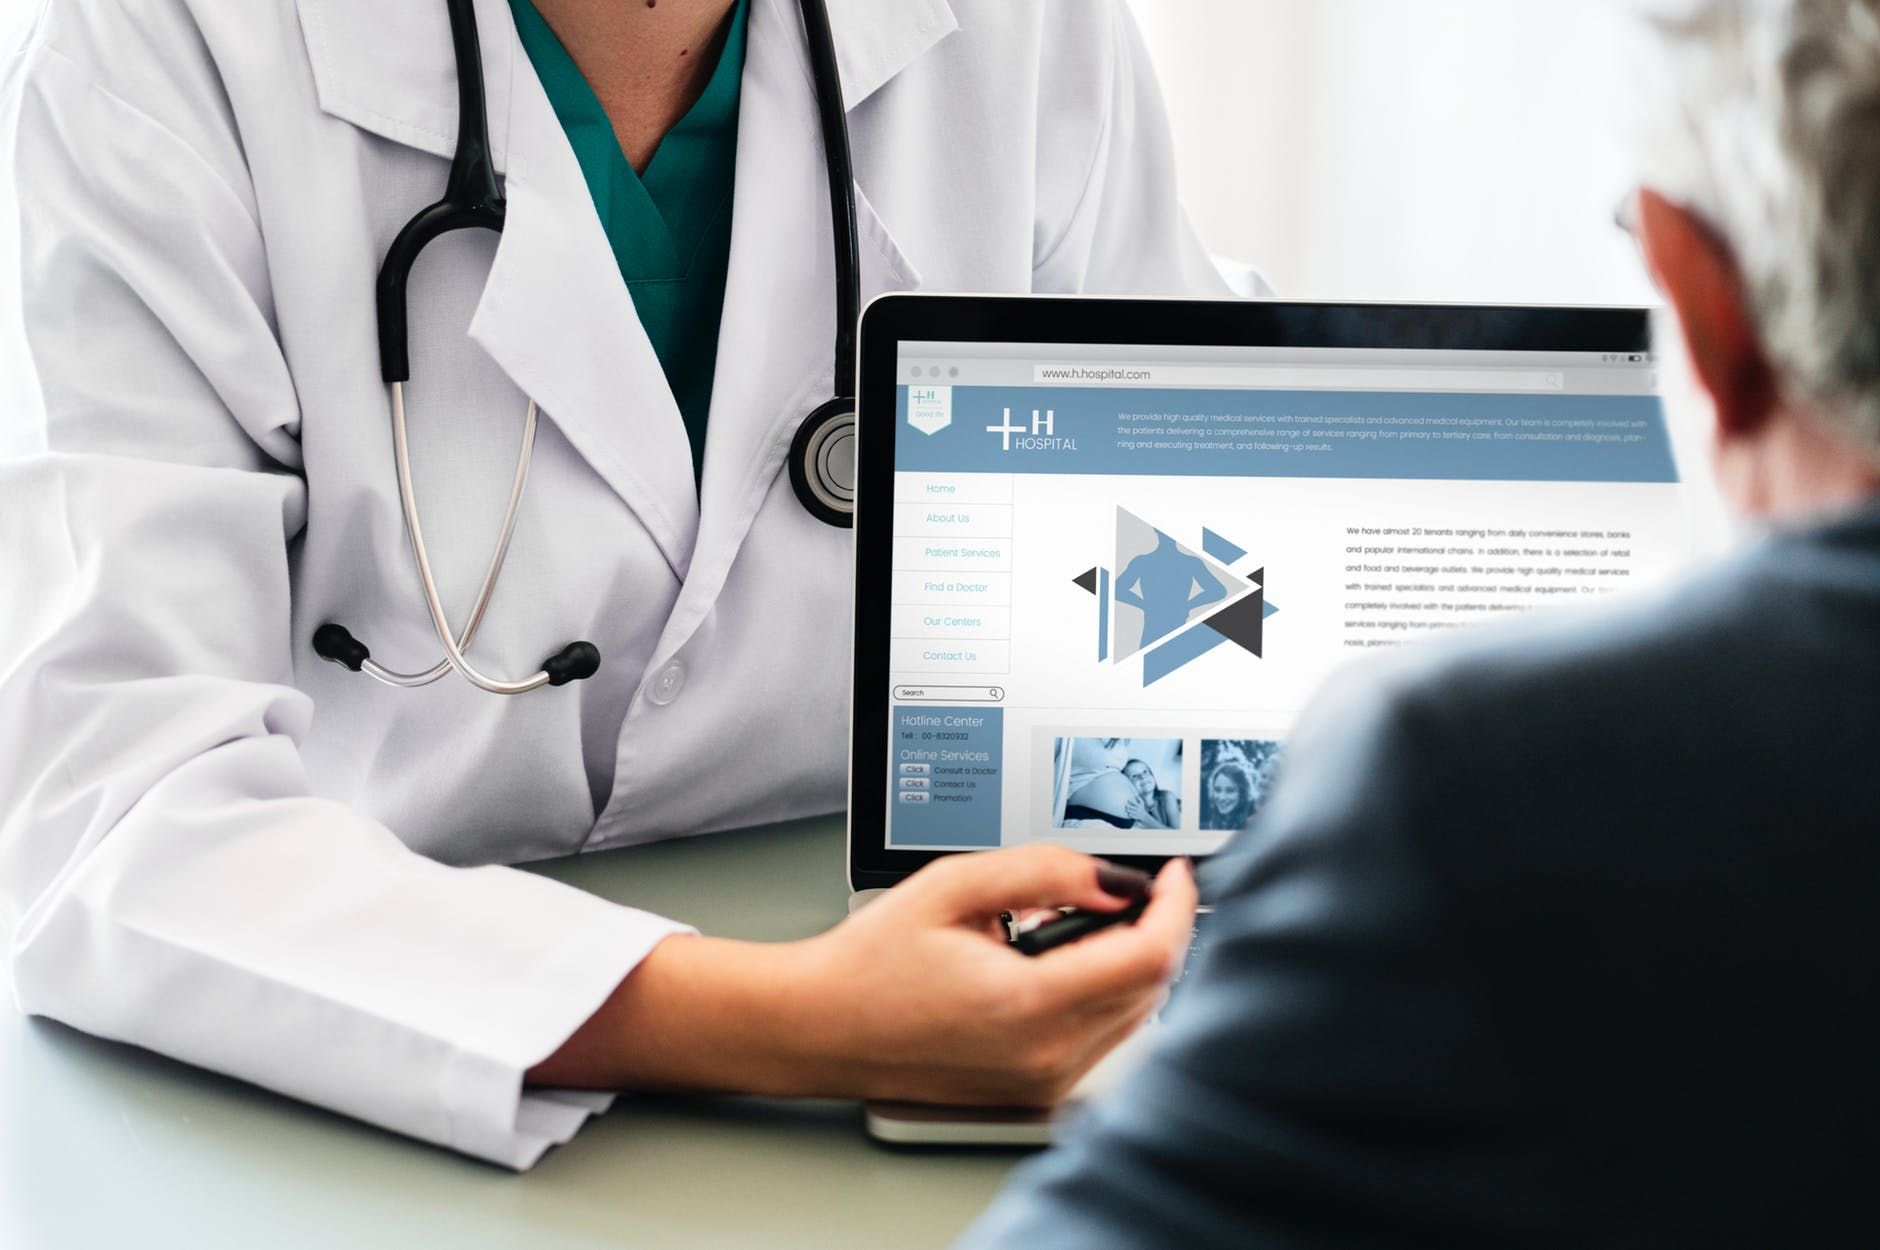 Program do gabinetu lekarskiego – czy może pomóc porządkować dokumentację medyczną?